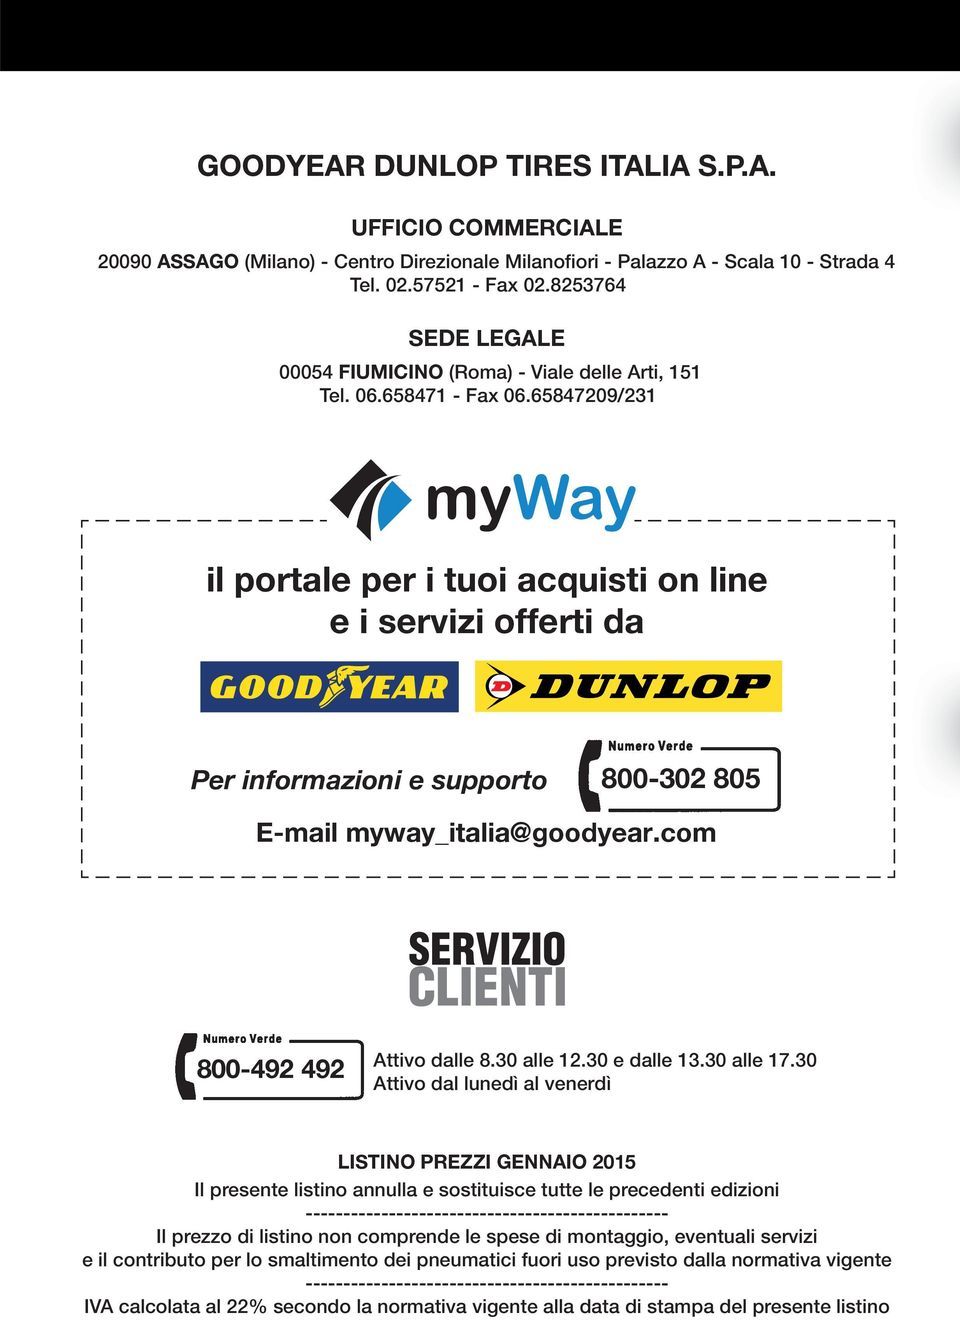 65847209/231 myway il portale per i tuoi acquisti on line e i servizi offerti da Per informazioni e supporto 800-302 805 E-mail myway_italia@goodyear.com SERVIZIO CLIENTI 800-492 492 Attivo dalle 8.